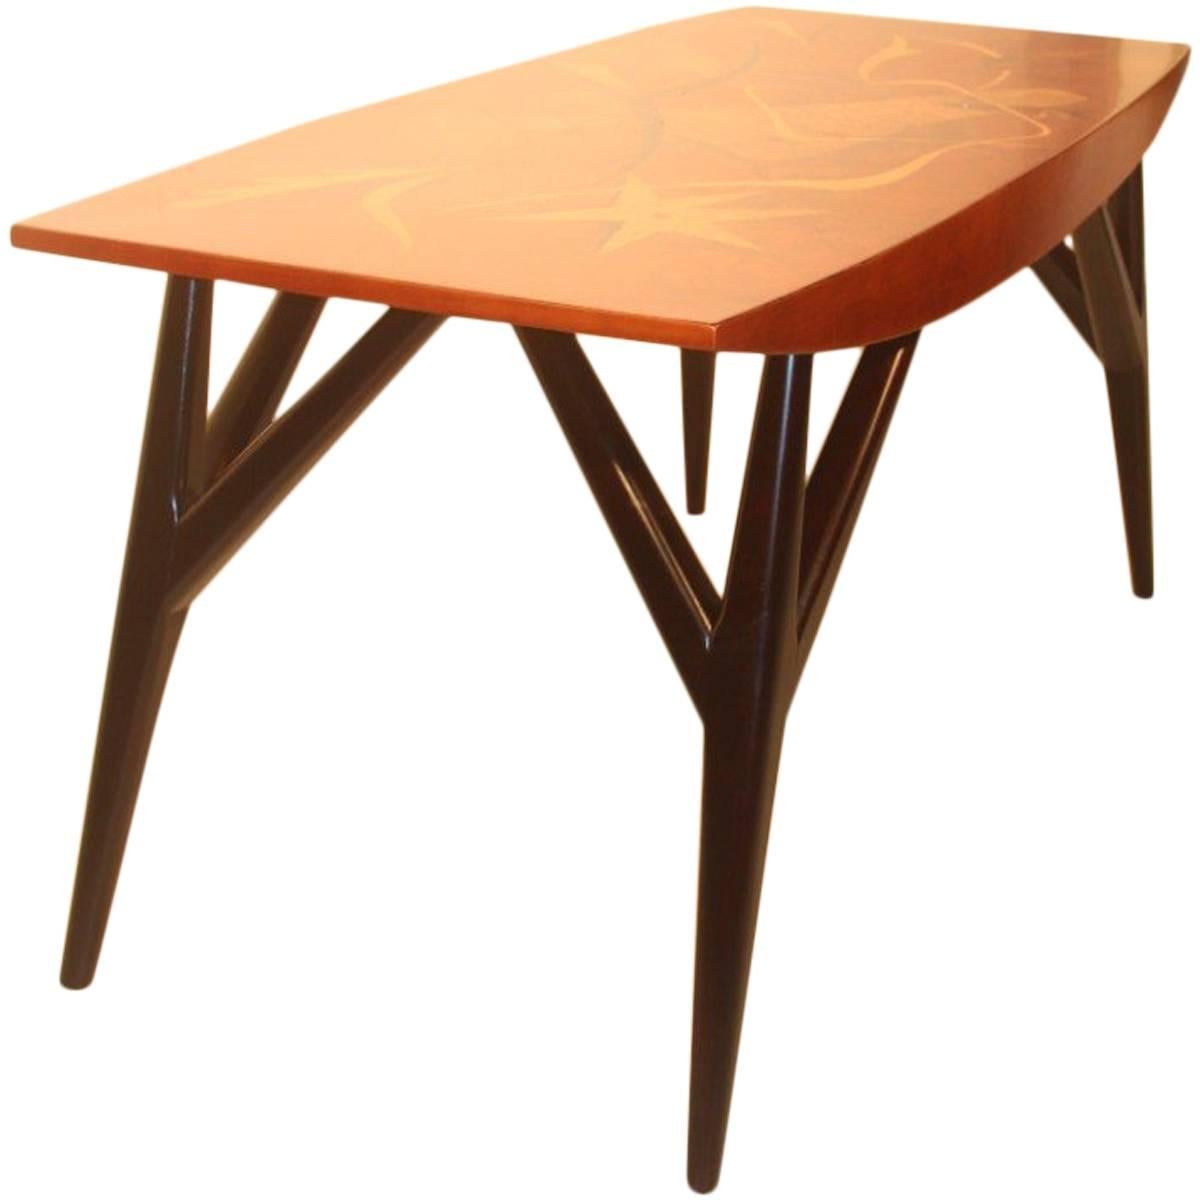 Table basse Luigi Scremin, formes minimalistes et minimalistes, design italien précieux en bois, années 1940